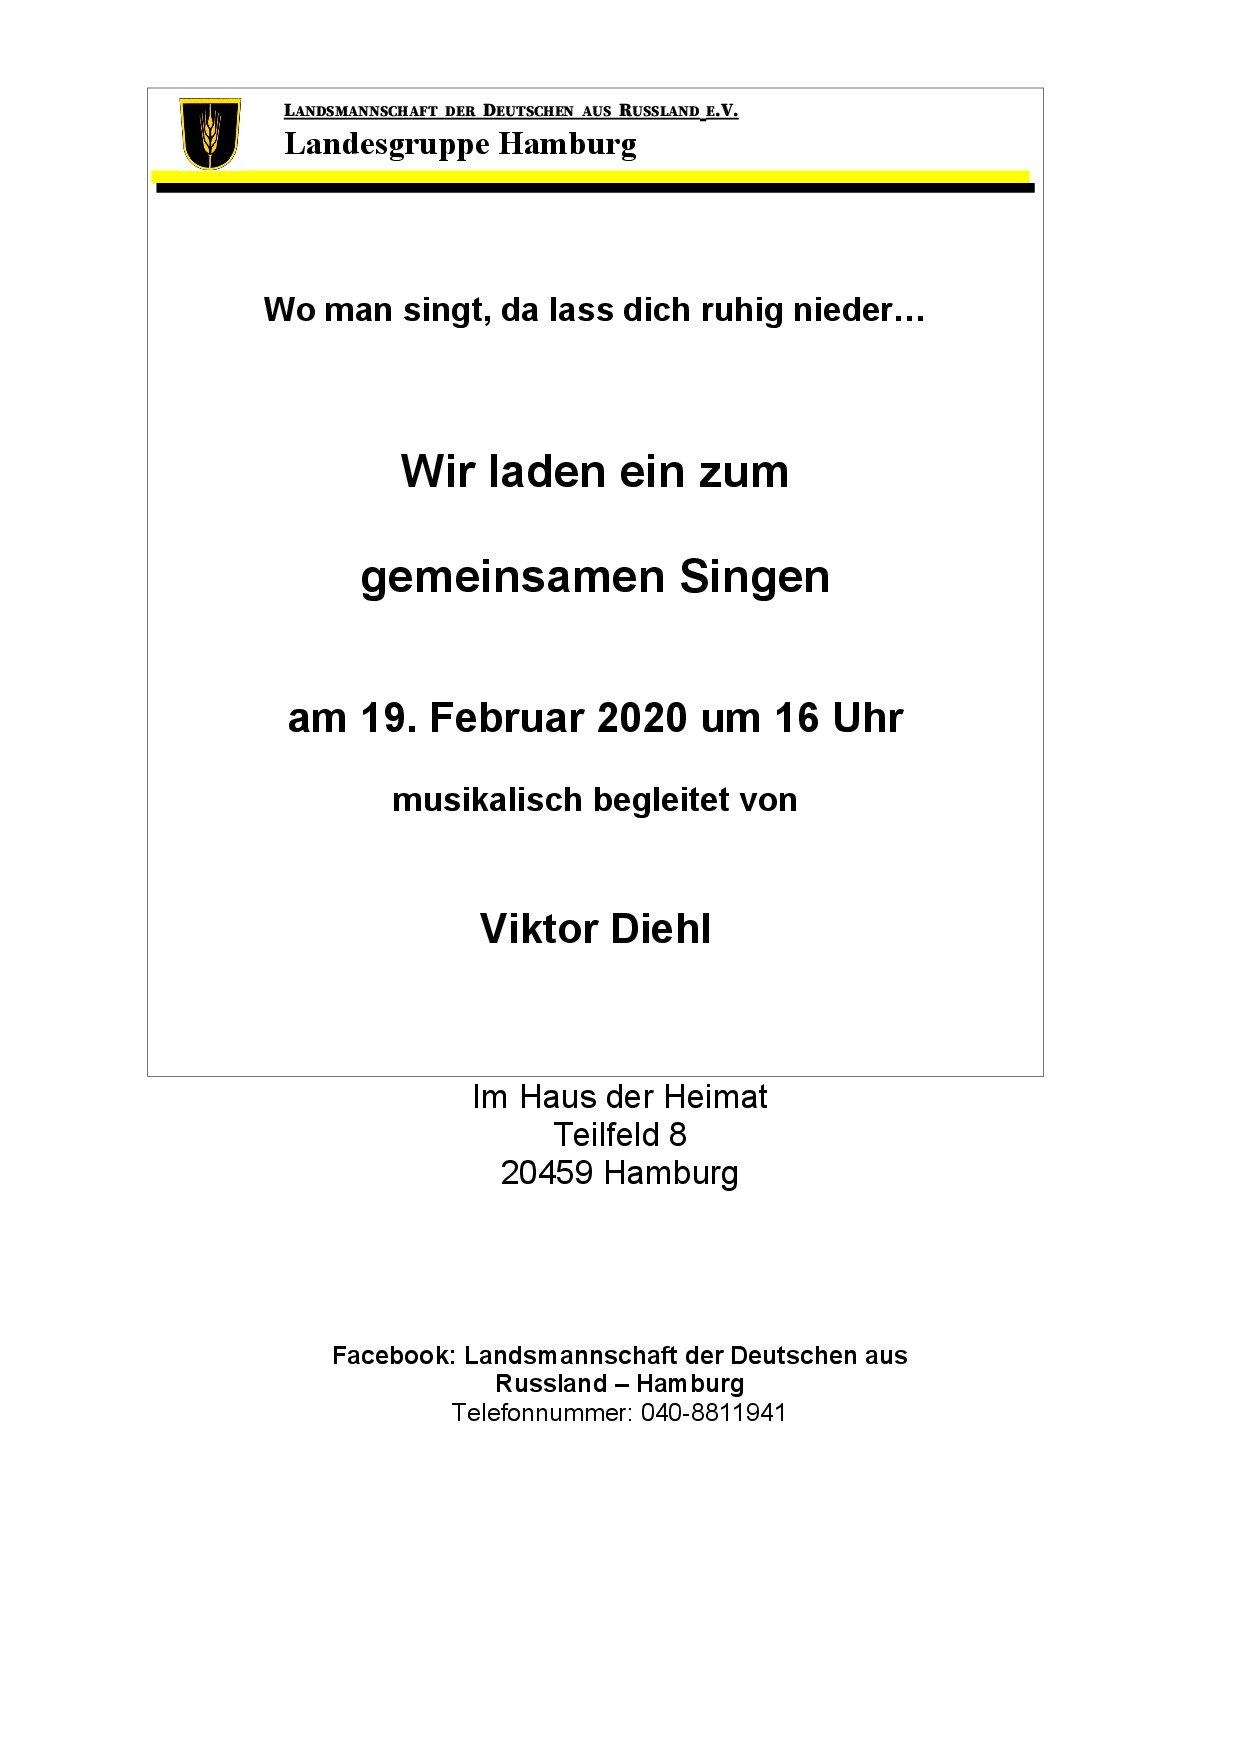 Einladung zum gemeinsamen Singen am 19.2.2020